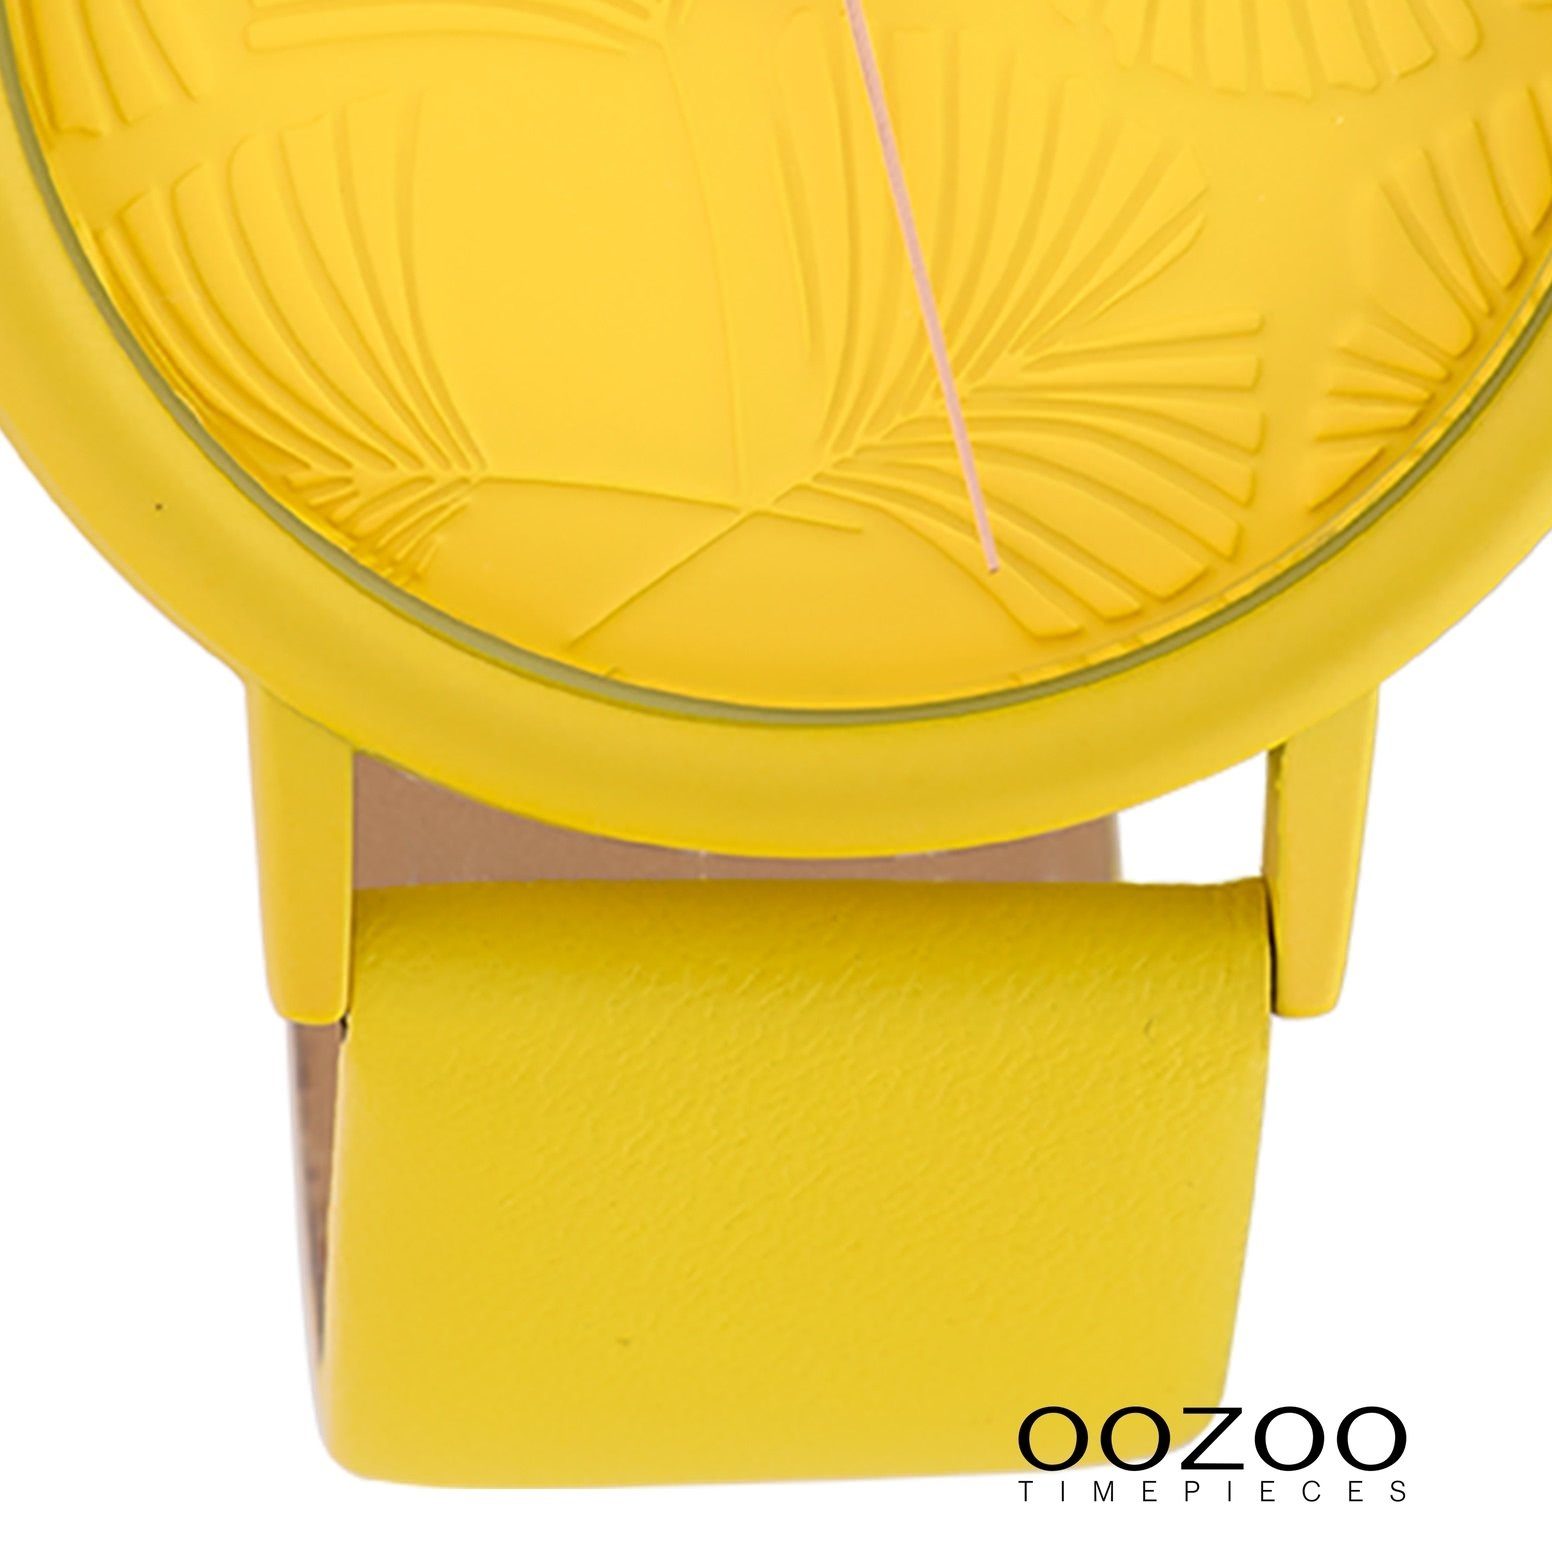 OOZOO Oozoo rund, Armbanduhr gelb, gelb, (ca. Fashion Damen Quarzuhr Damenuhr Lederarmband 42mm), groß